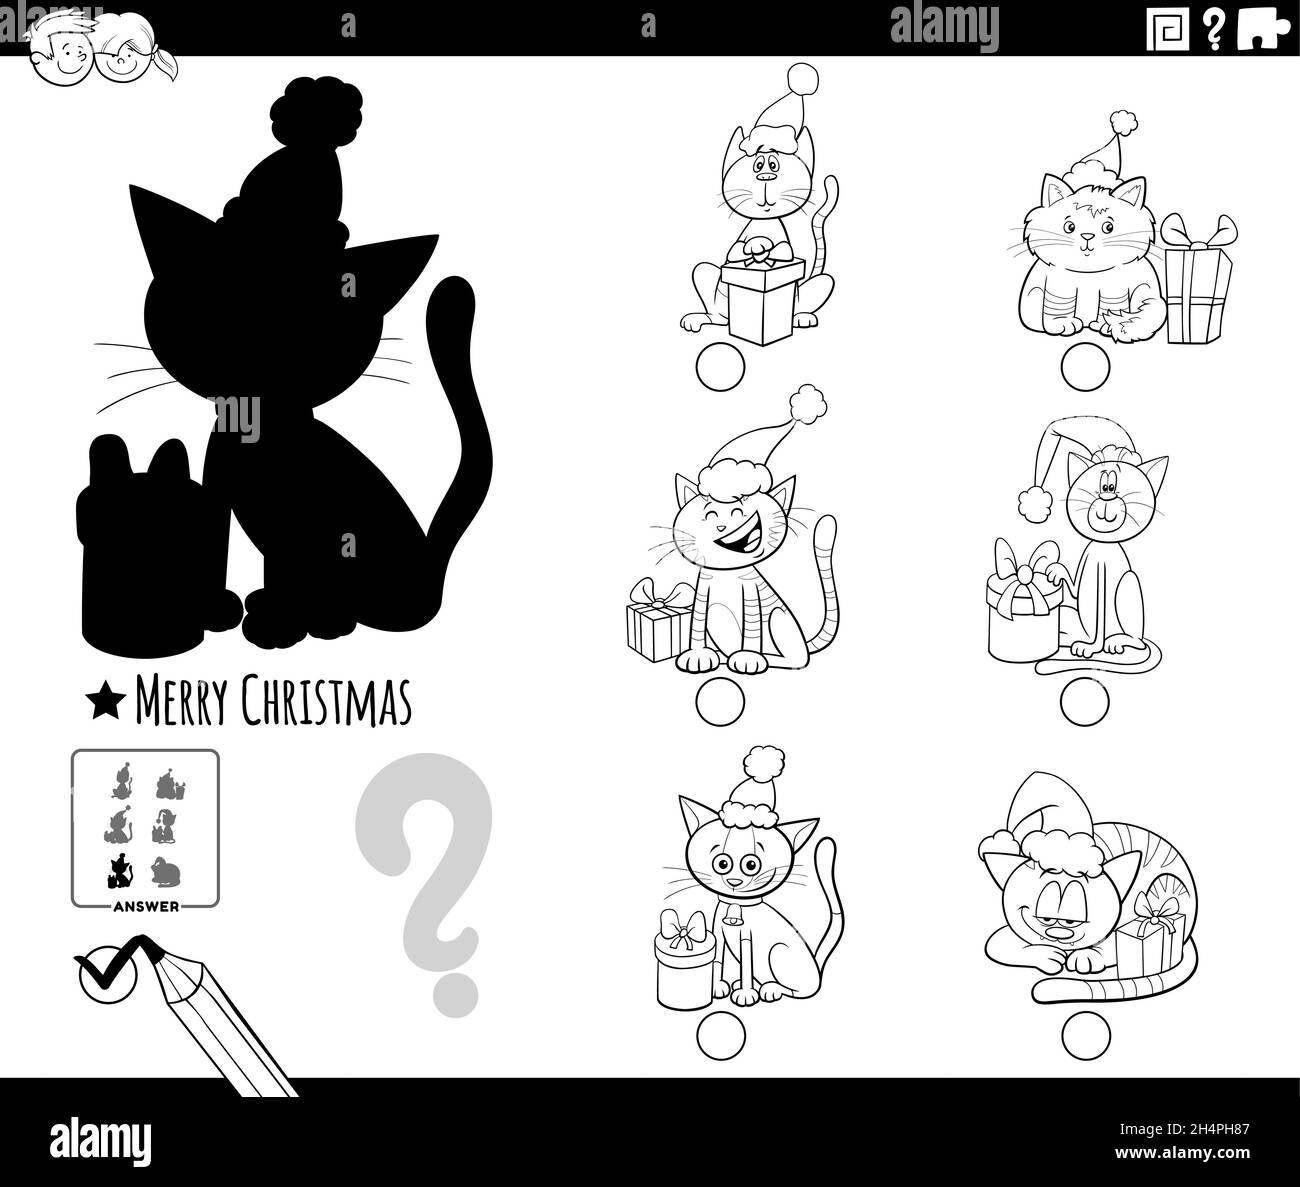 Dessin animé noir et blanc illustration de trouver la bonne image à l'ombre tâche éducative pour les enfants avec des personnages de chats à l'heure de Noël c Illustration de Vecteur